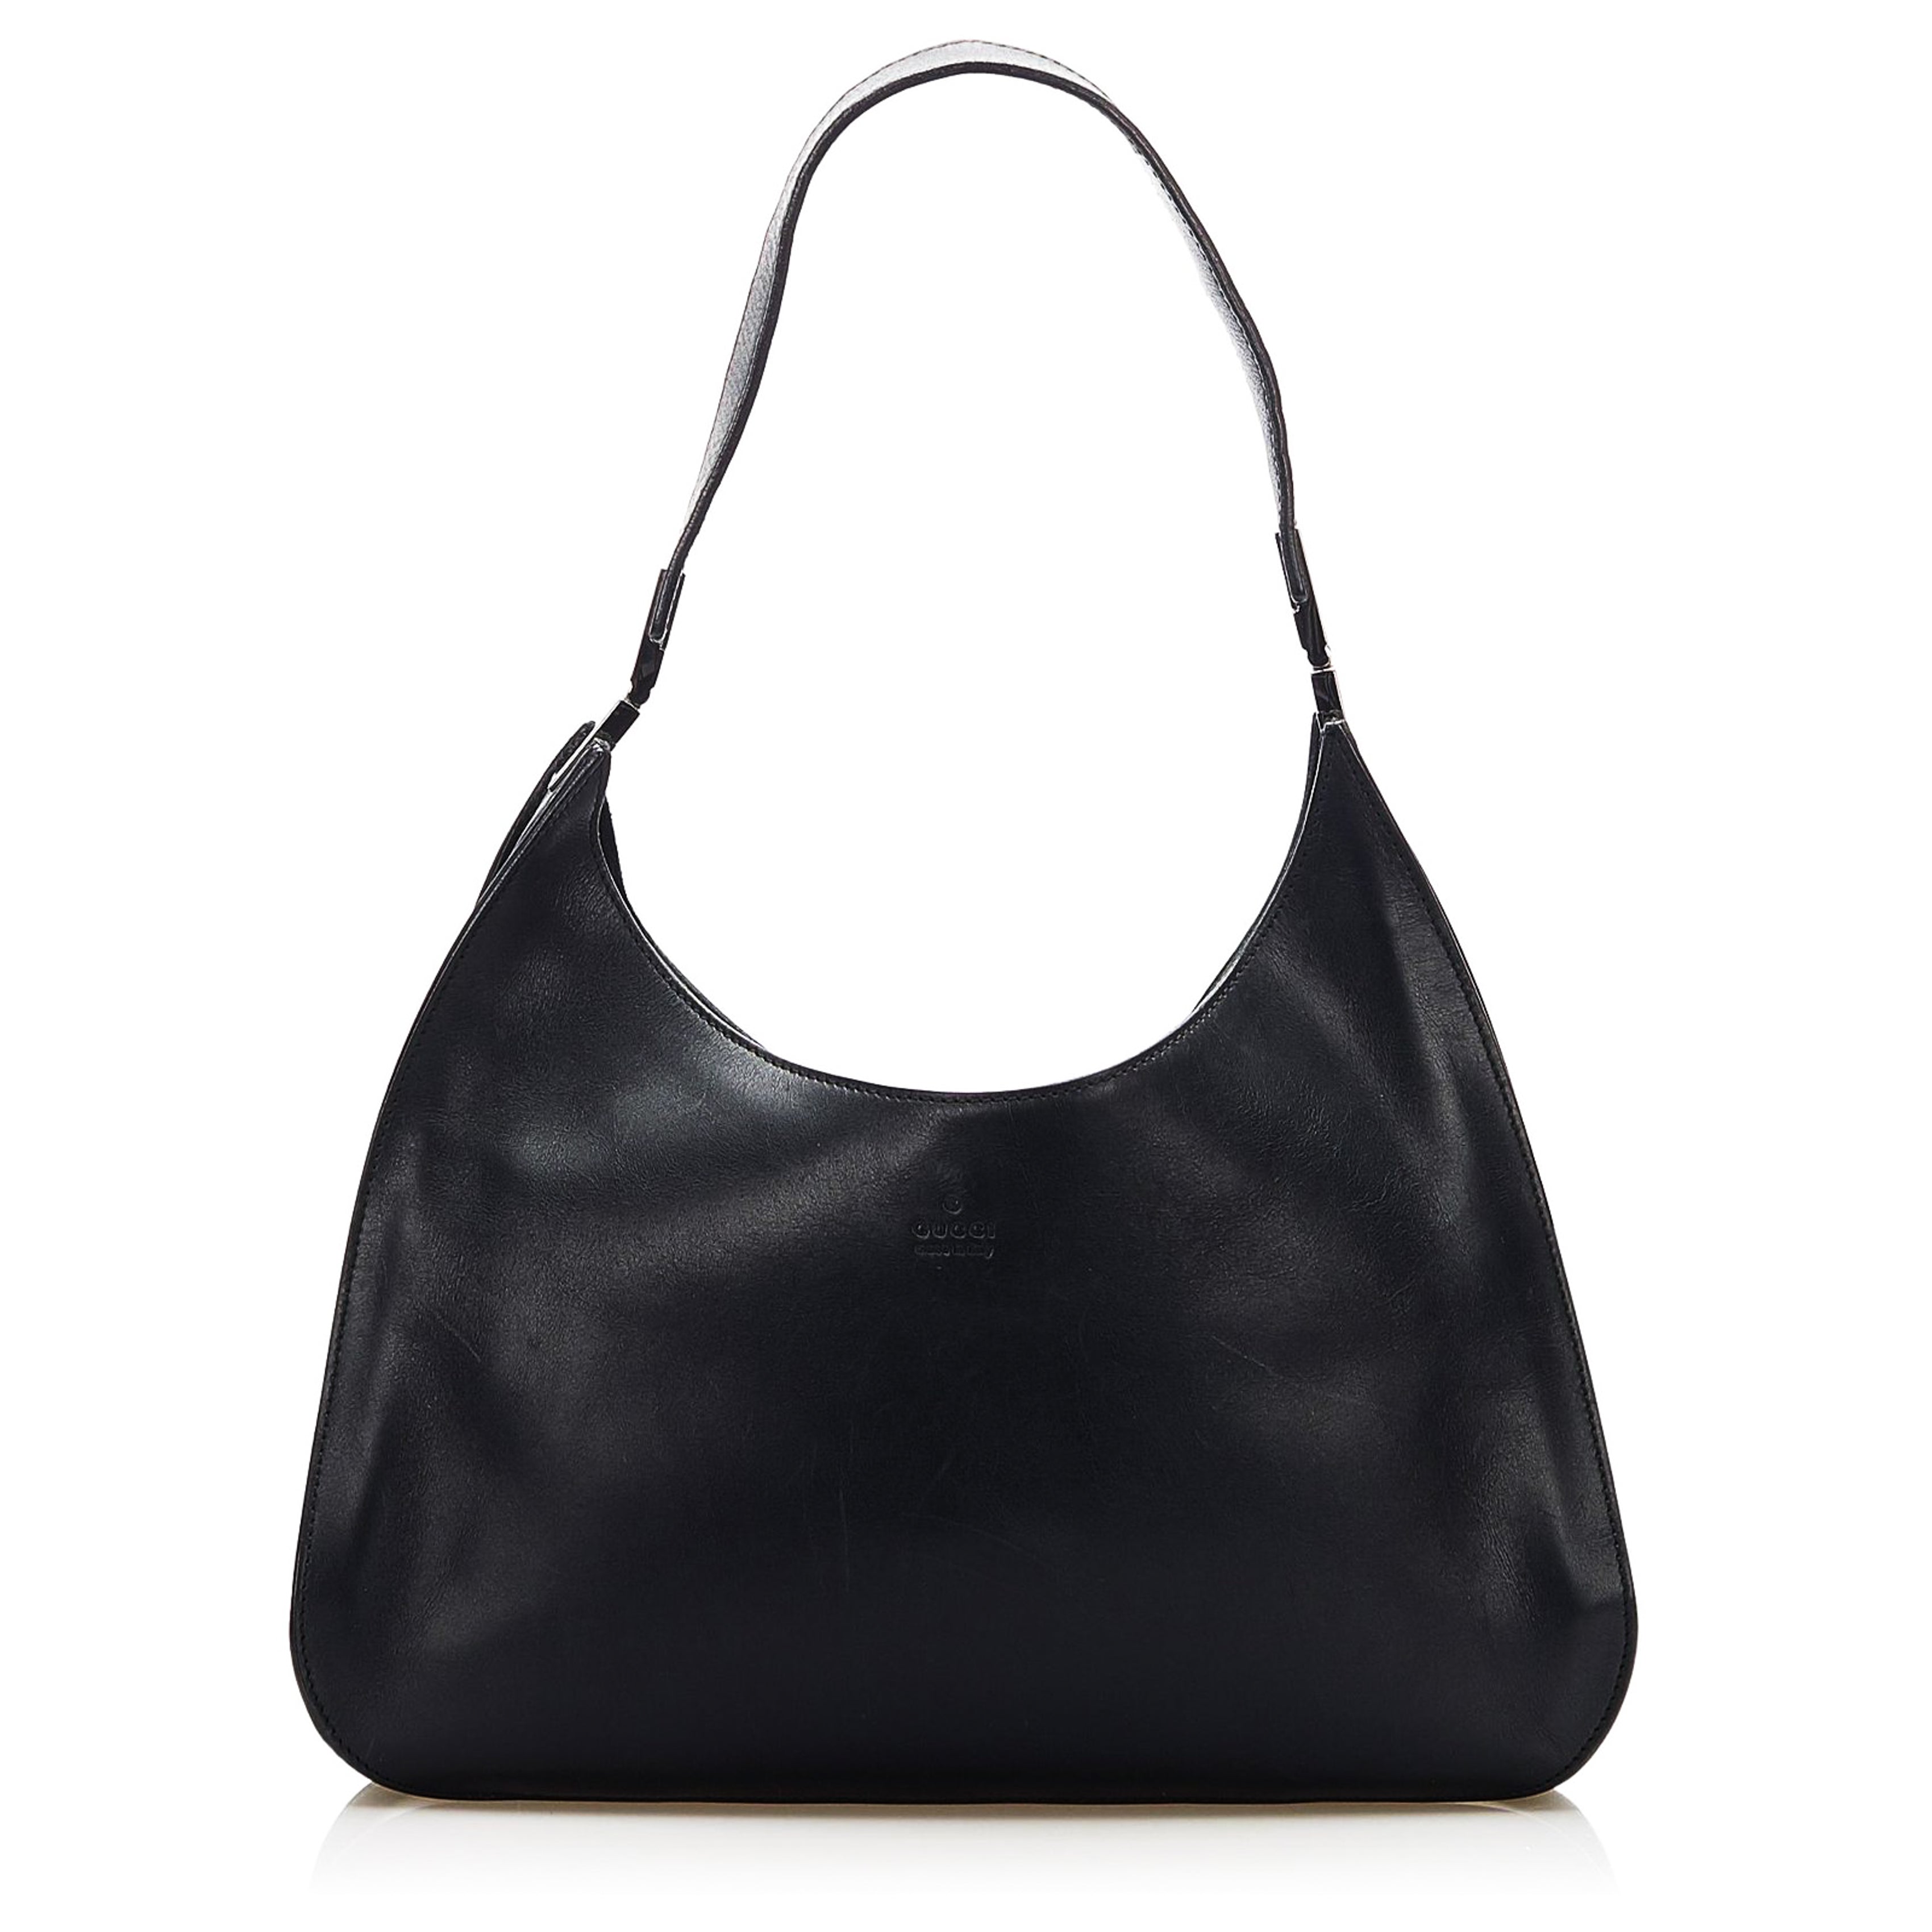 GUCCI Gucci Leather Shoulder Bag in Black - Vault 55